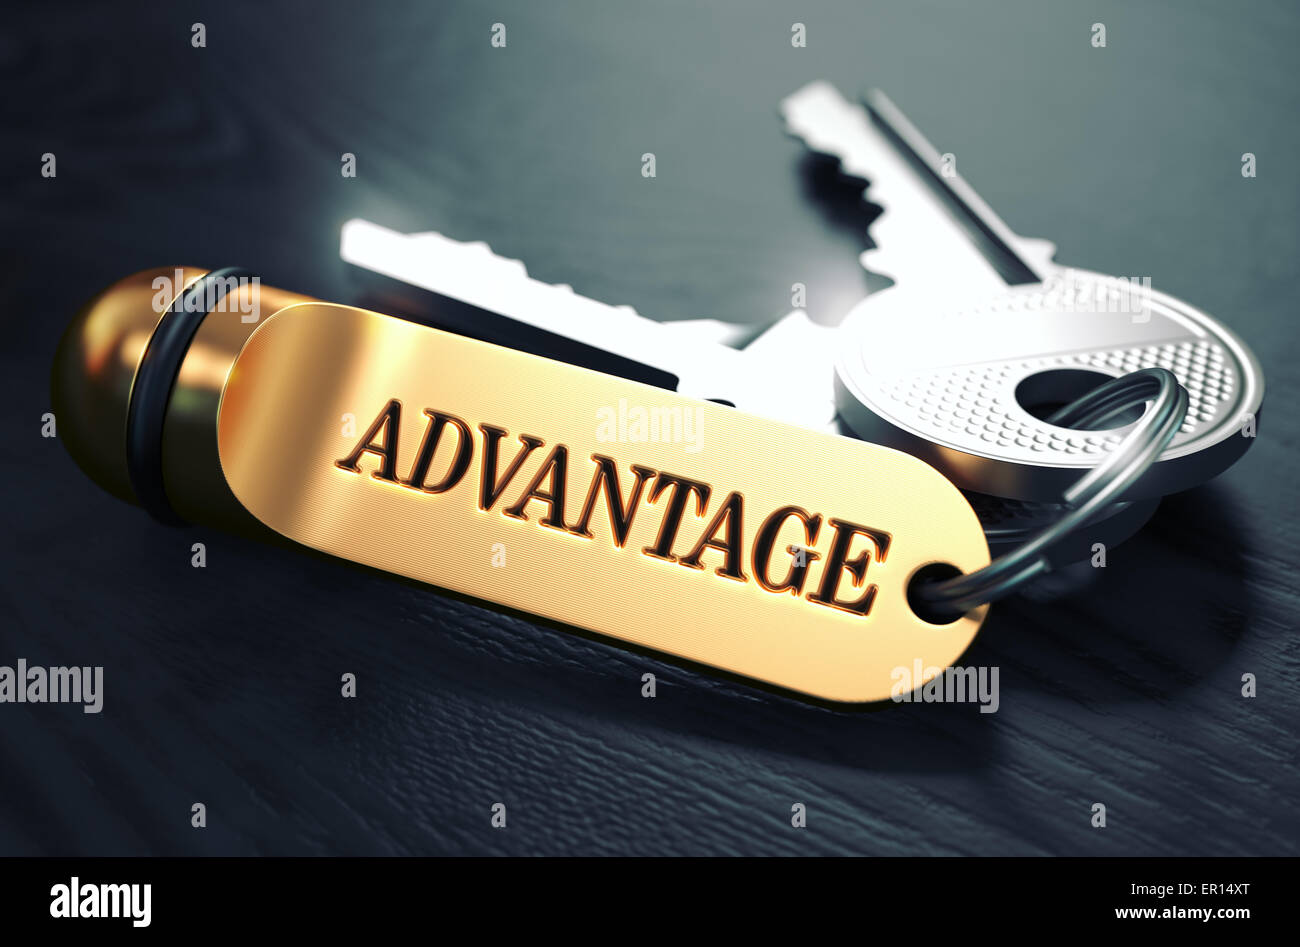 Advantage written on Golden Keyring. Stock Photo